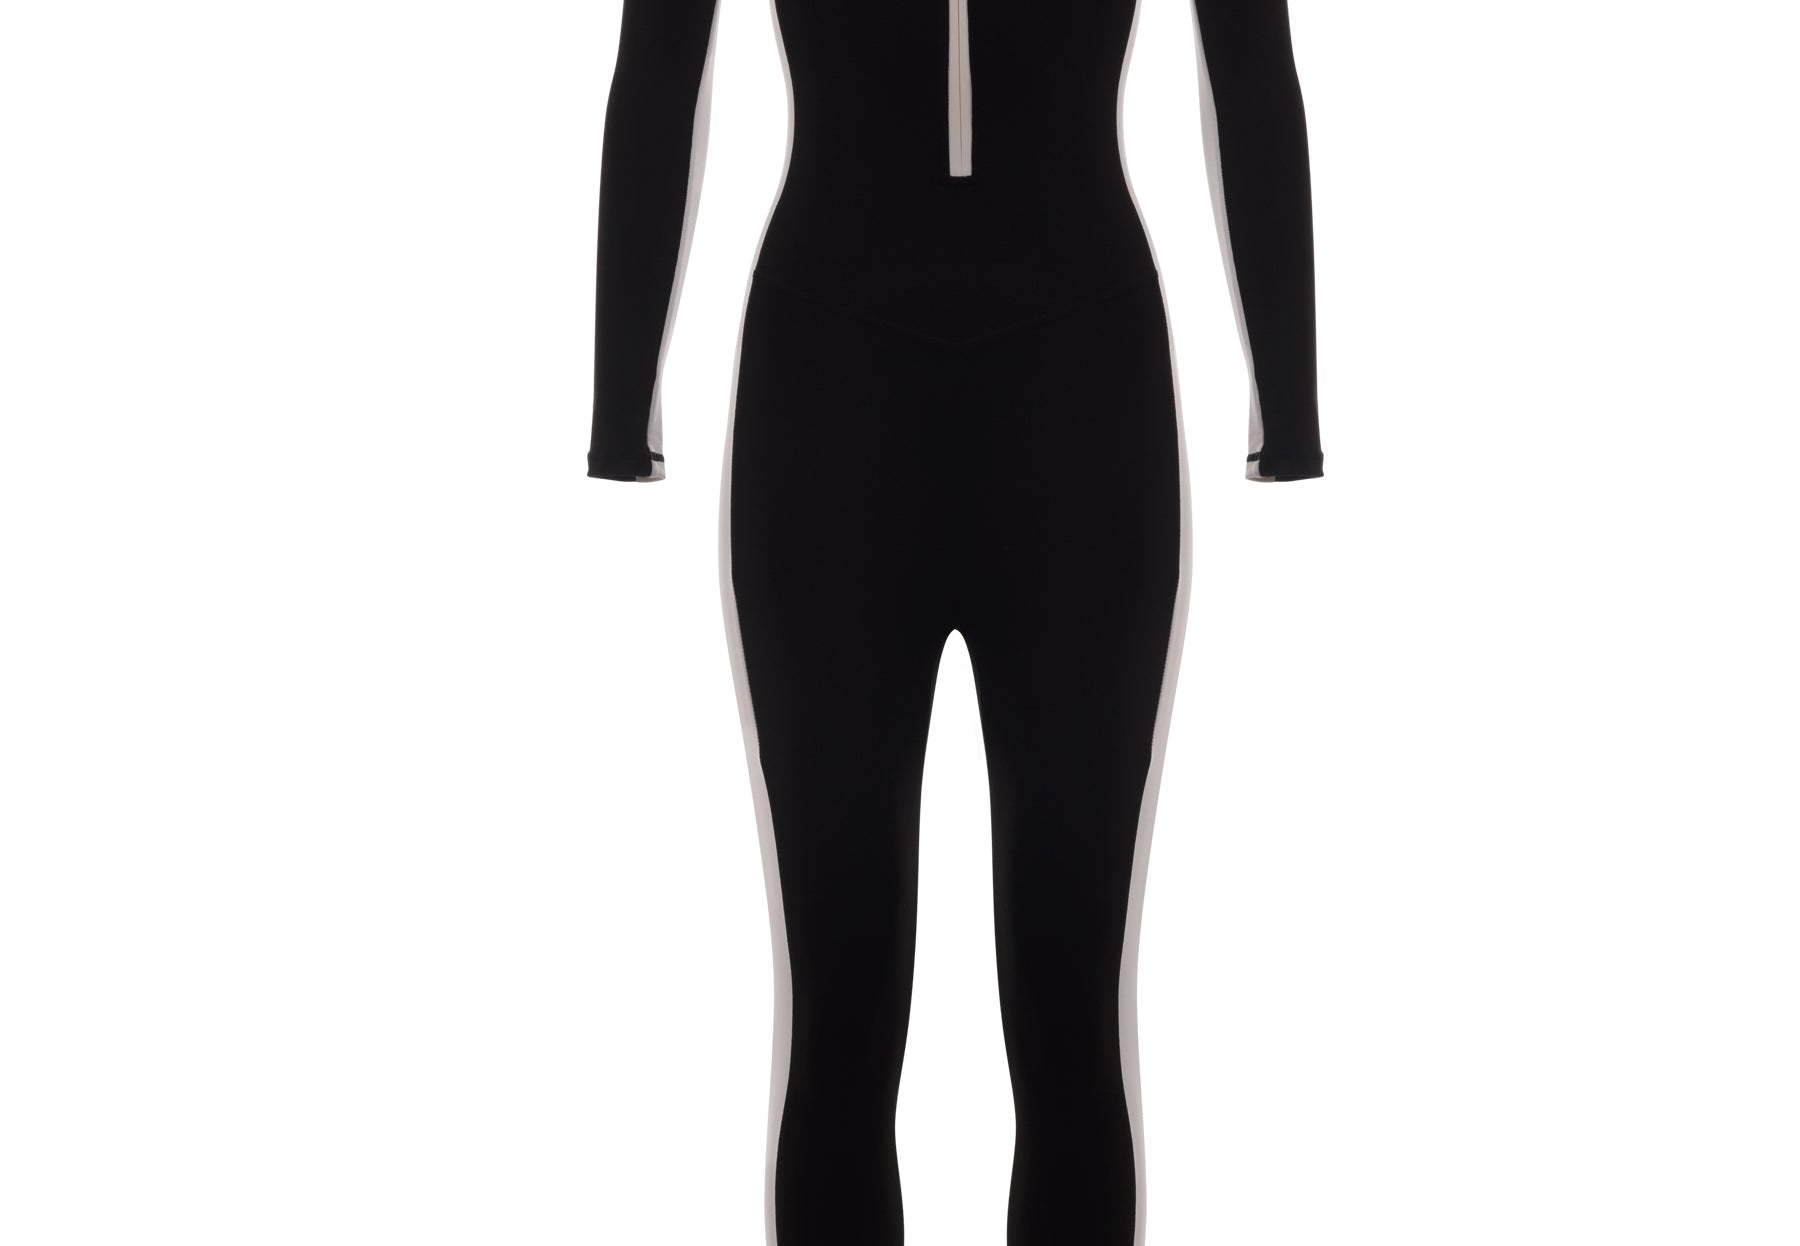 XTREM Bodysuit - YantraConnection